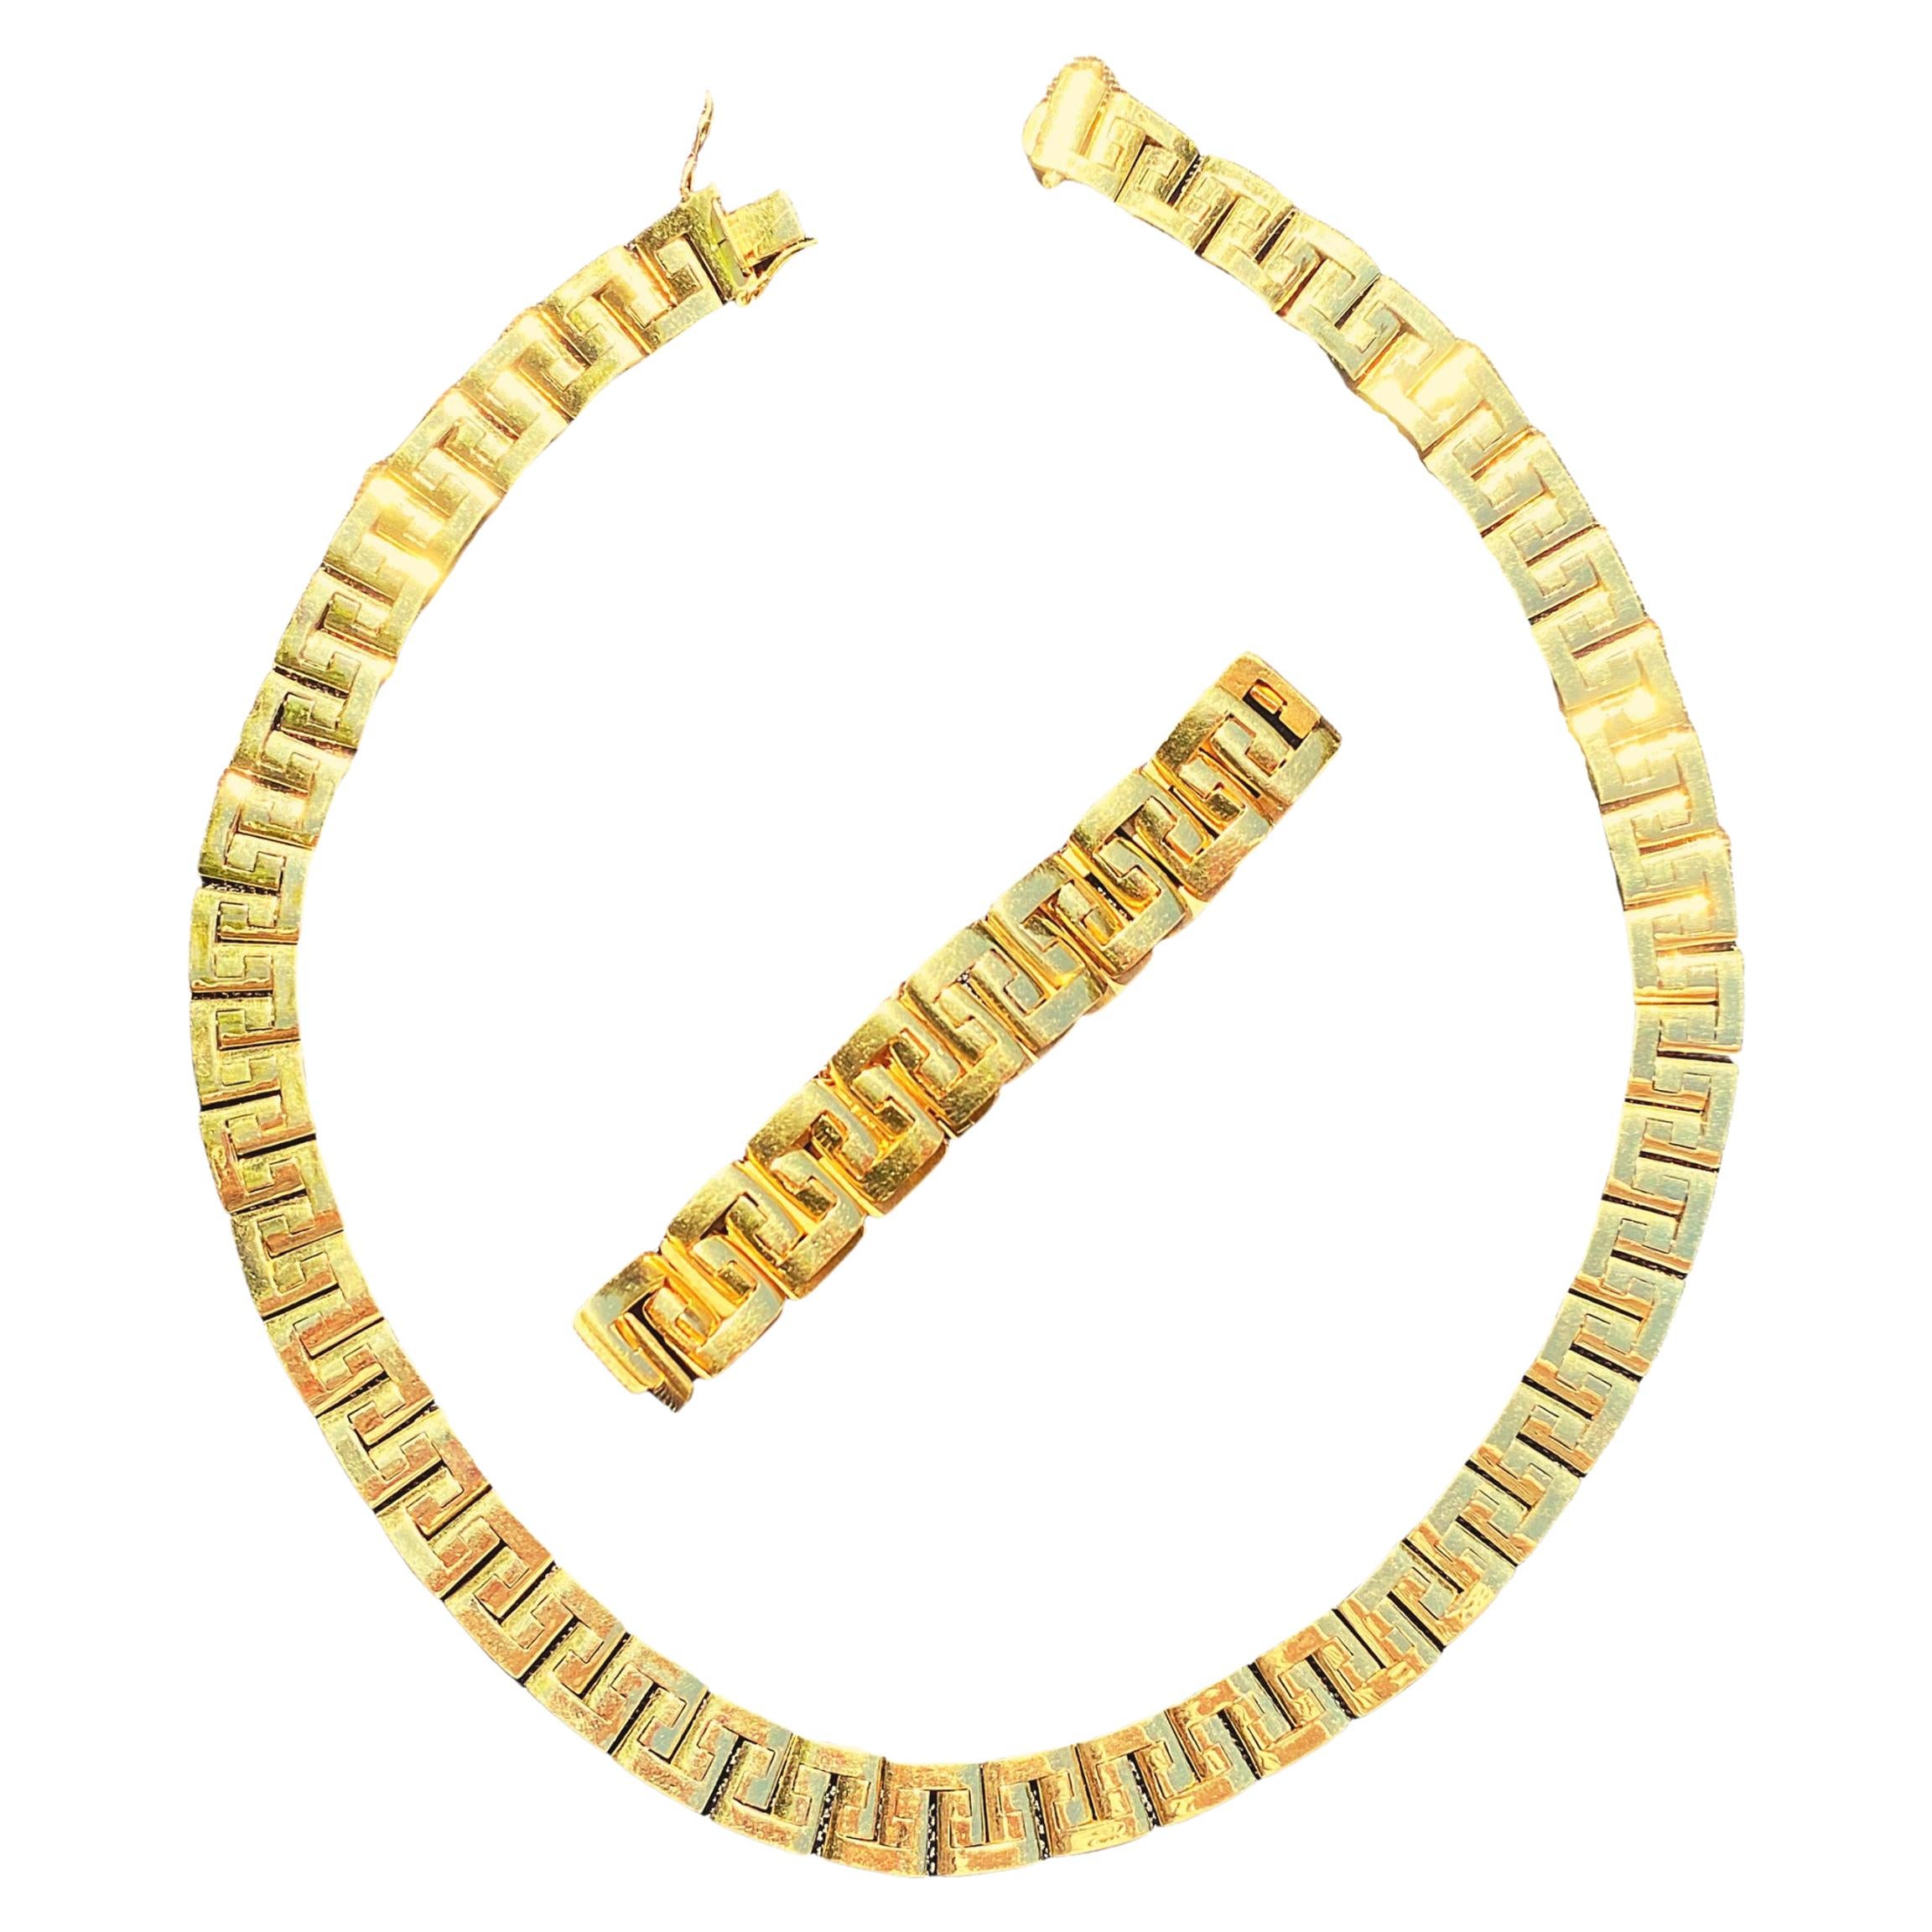 157 Grams 18 Karat Gold Link Chain Design Gold Necklace and Bracelet Men's Set